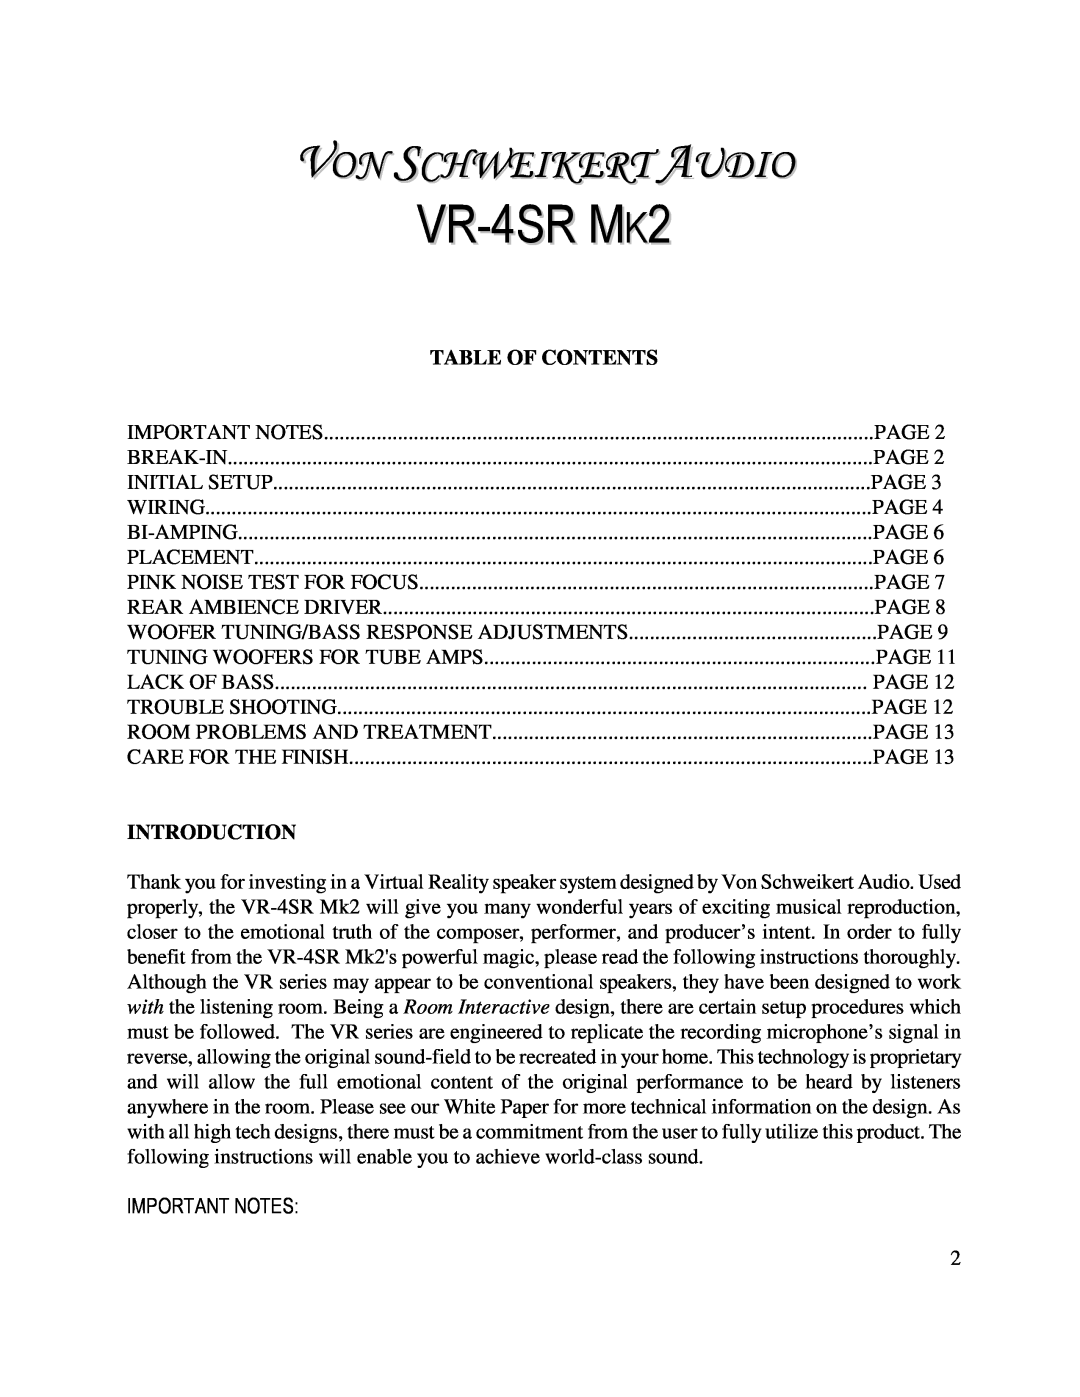 Von Schweikert Audio VR-4SR MK2 manual Important Notes, VR-4SRMK2, Von Schweikert Audio, Table Of Contents, Introduction 